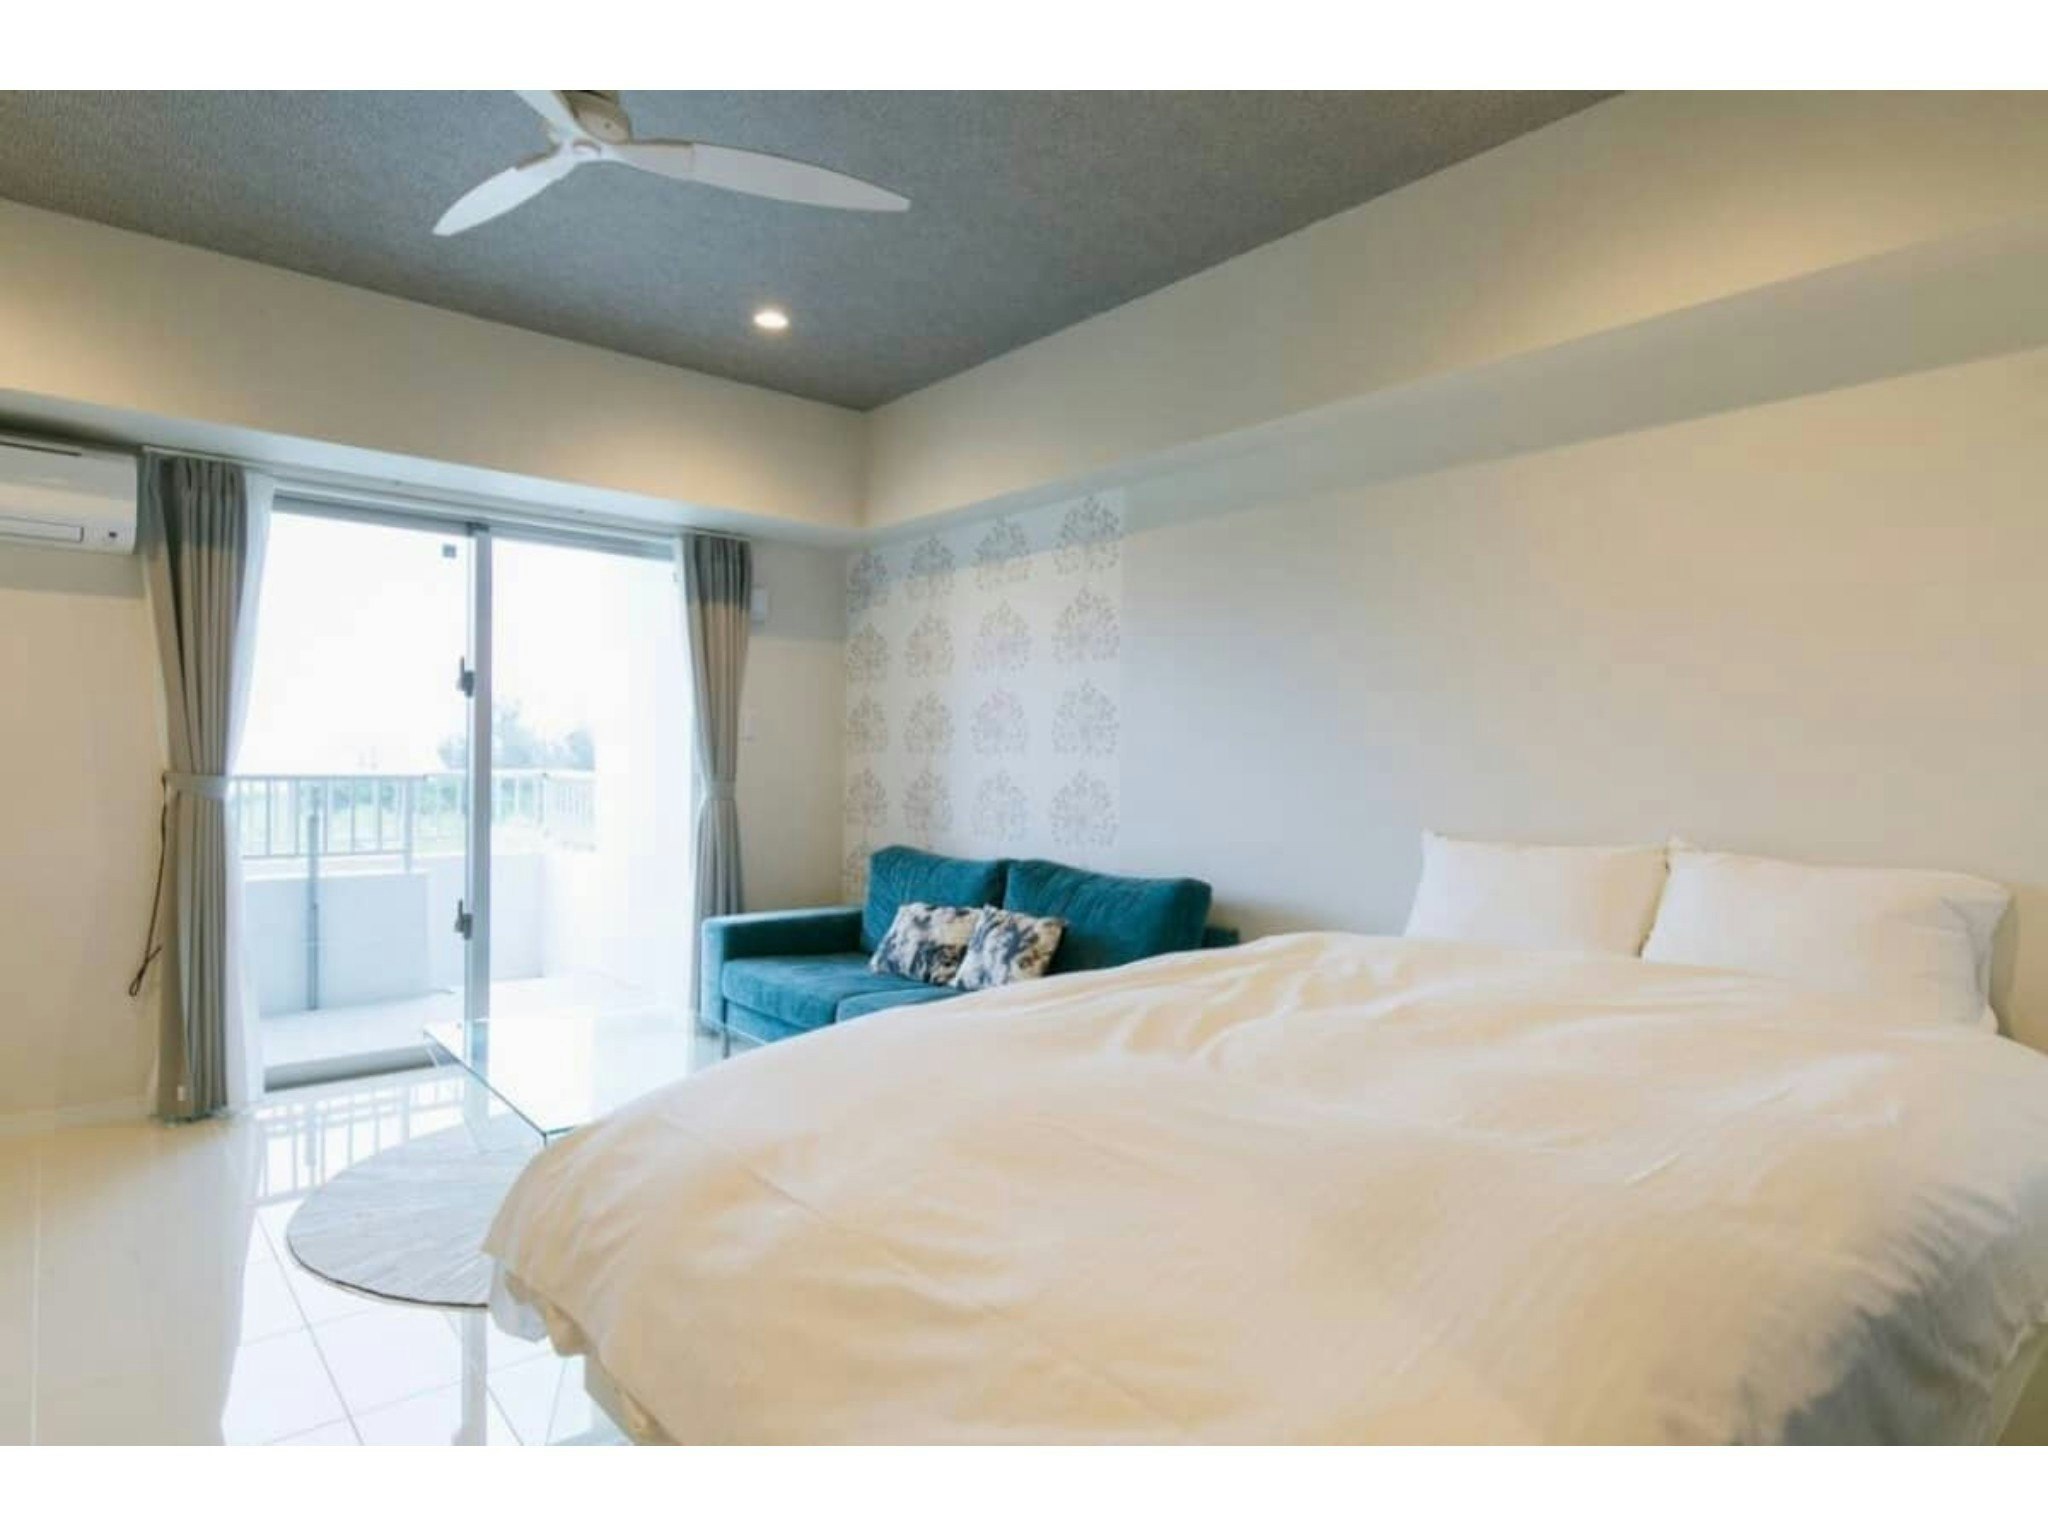 【102】爽やかなブルーの家具が、真栄田岬の海と空に溶け込みます!「ロンバケ沖縄」